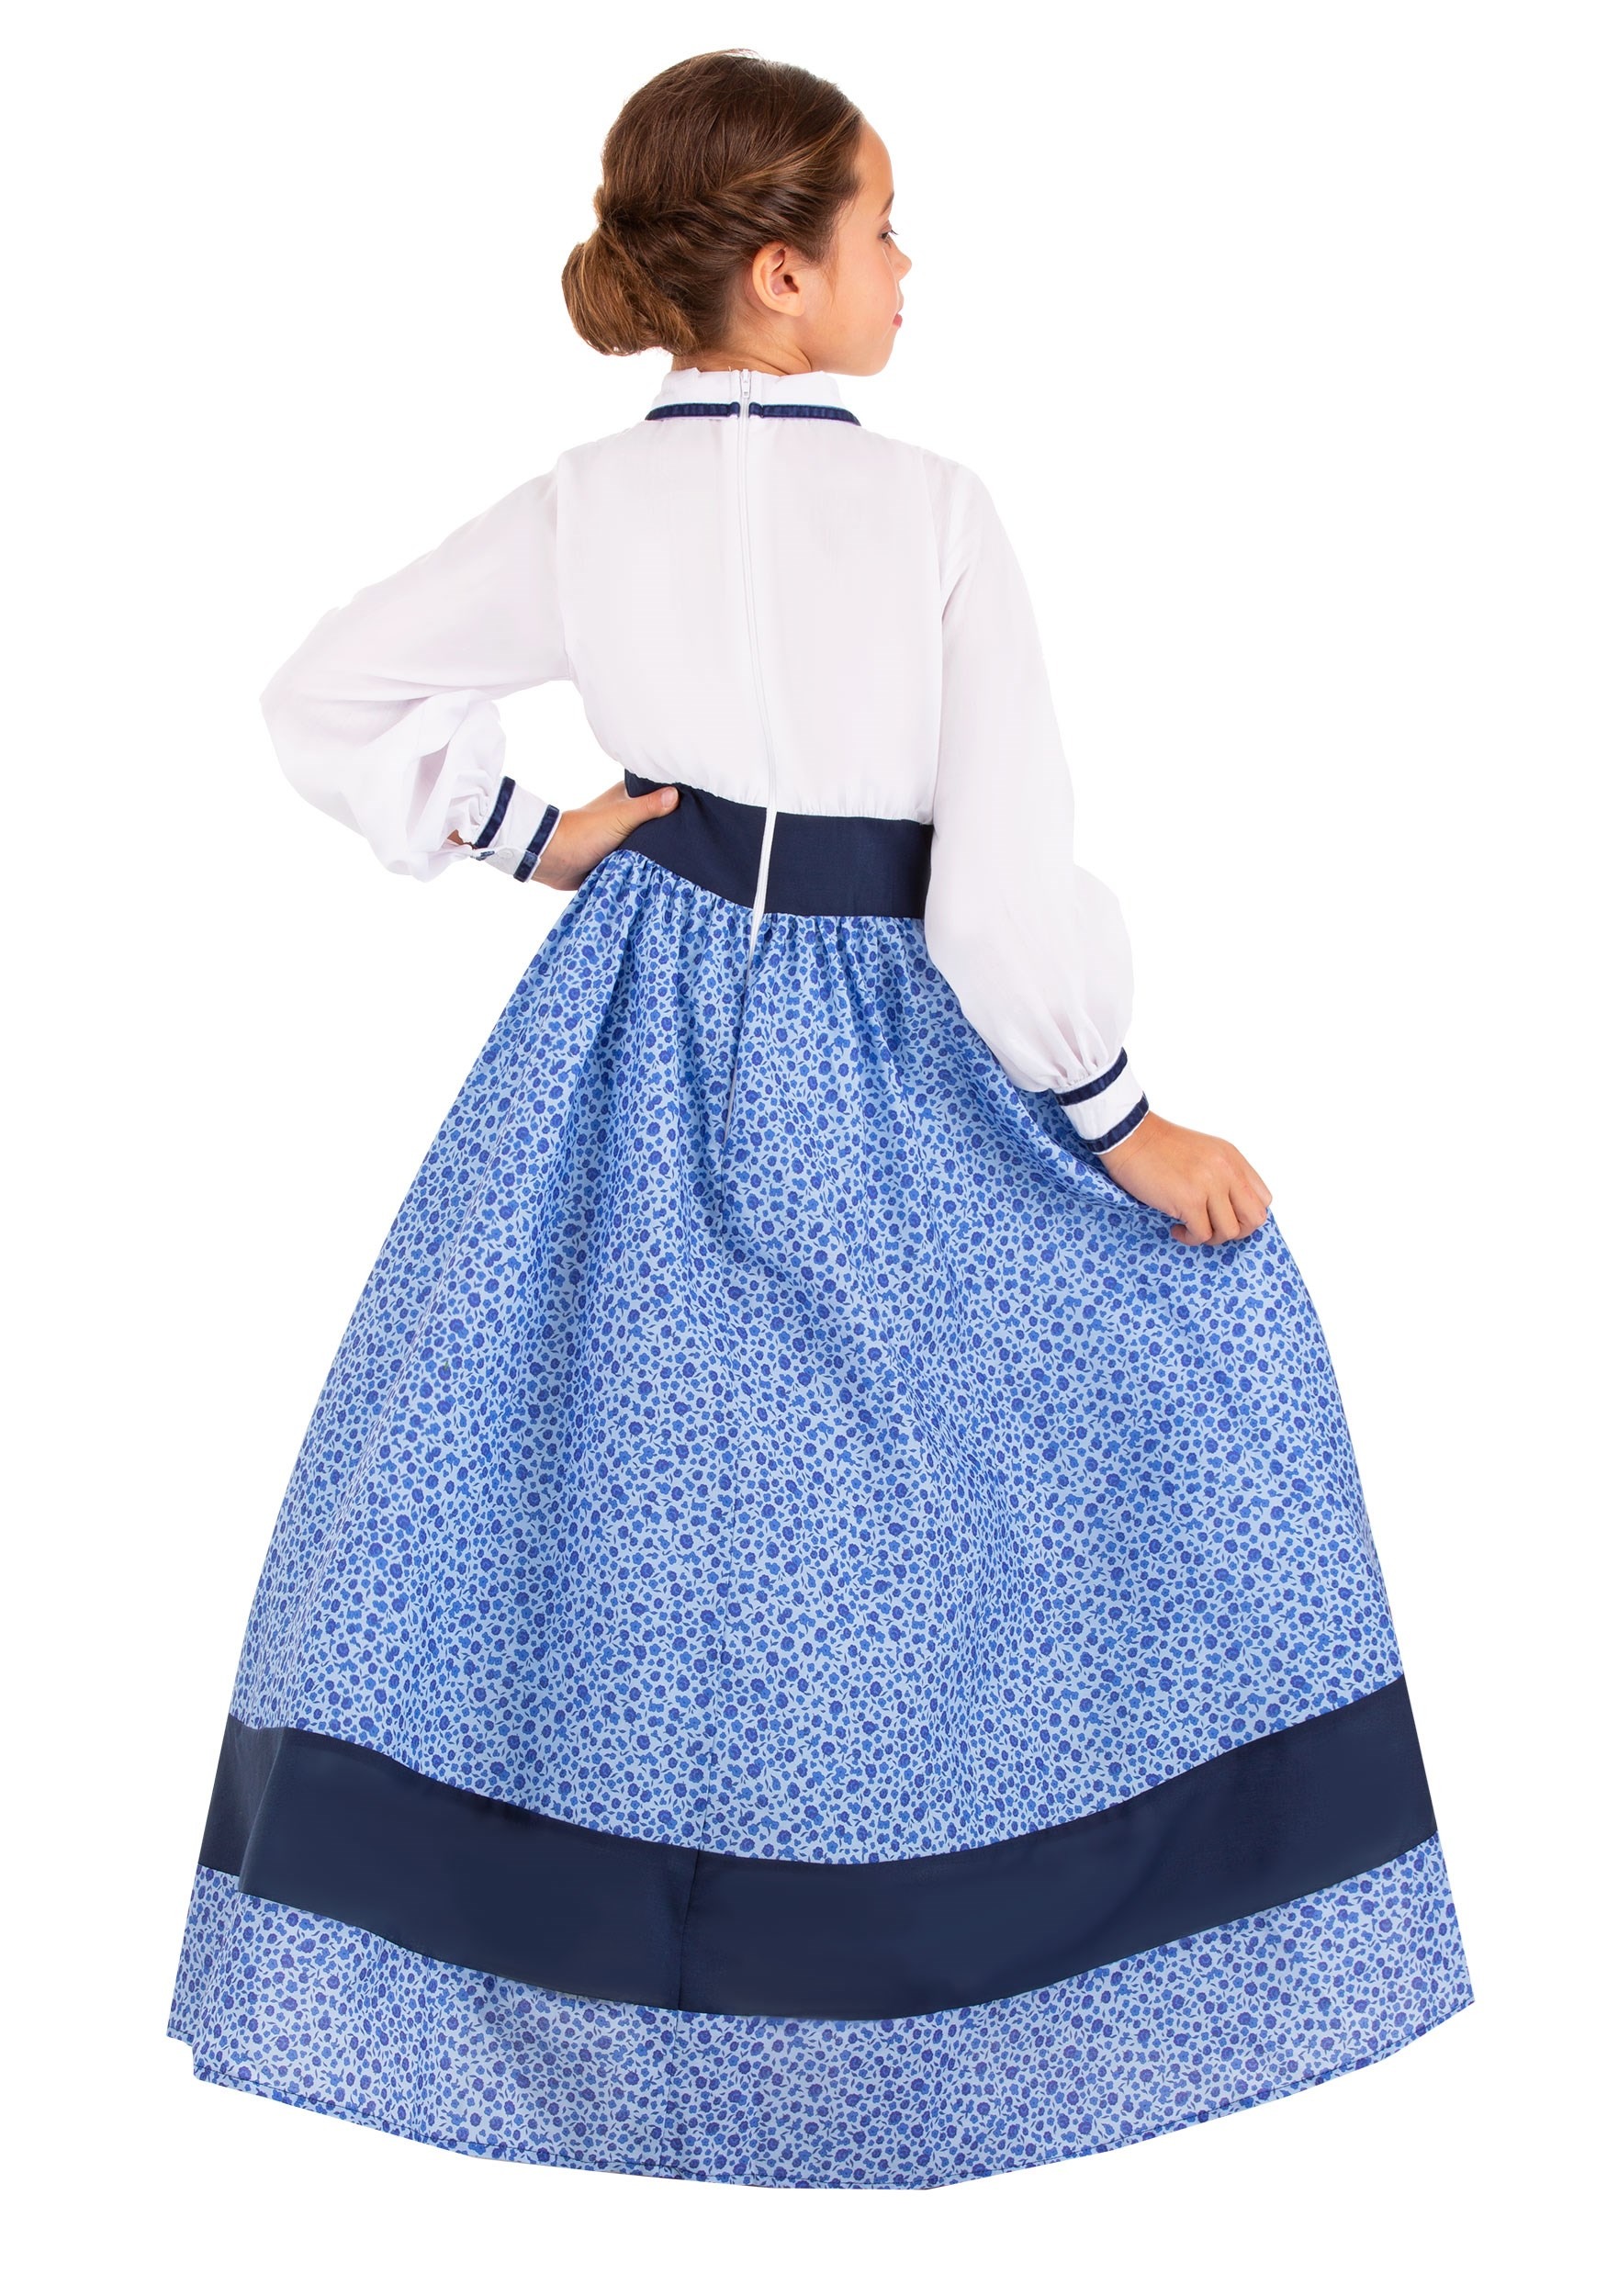 Prairie Dress Costume For Girls